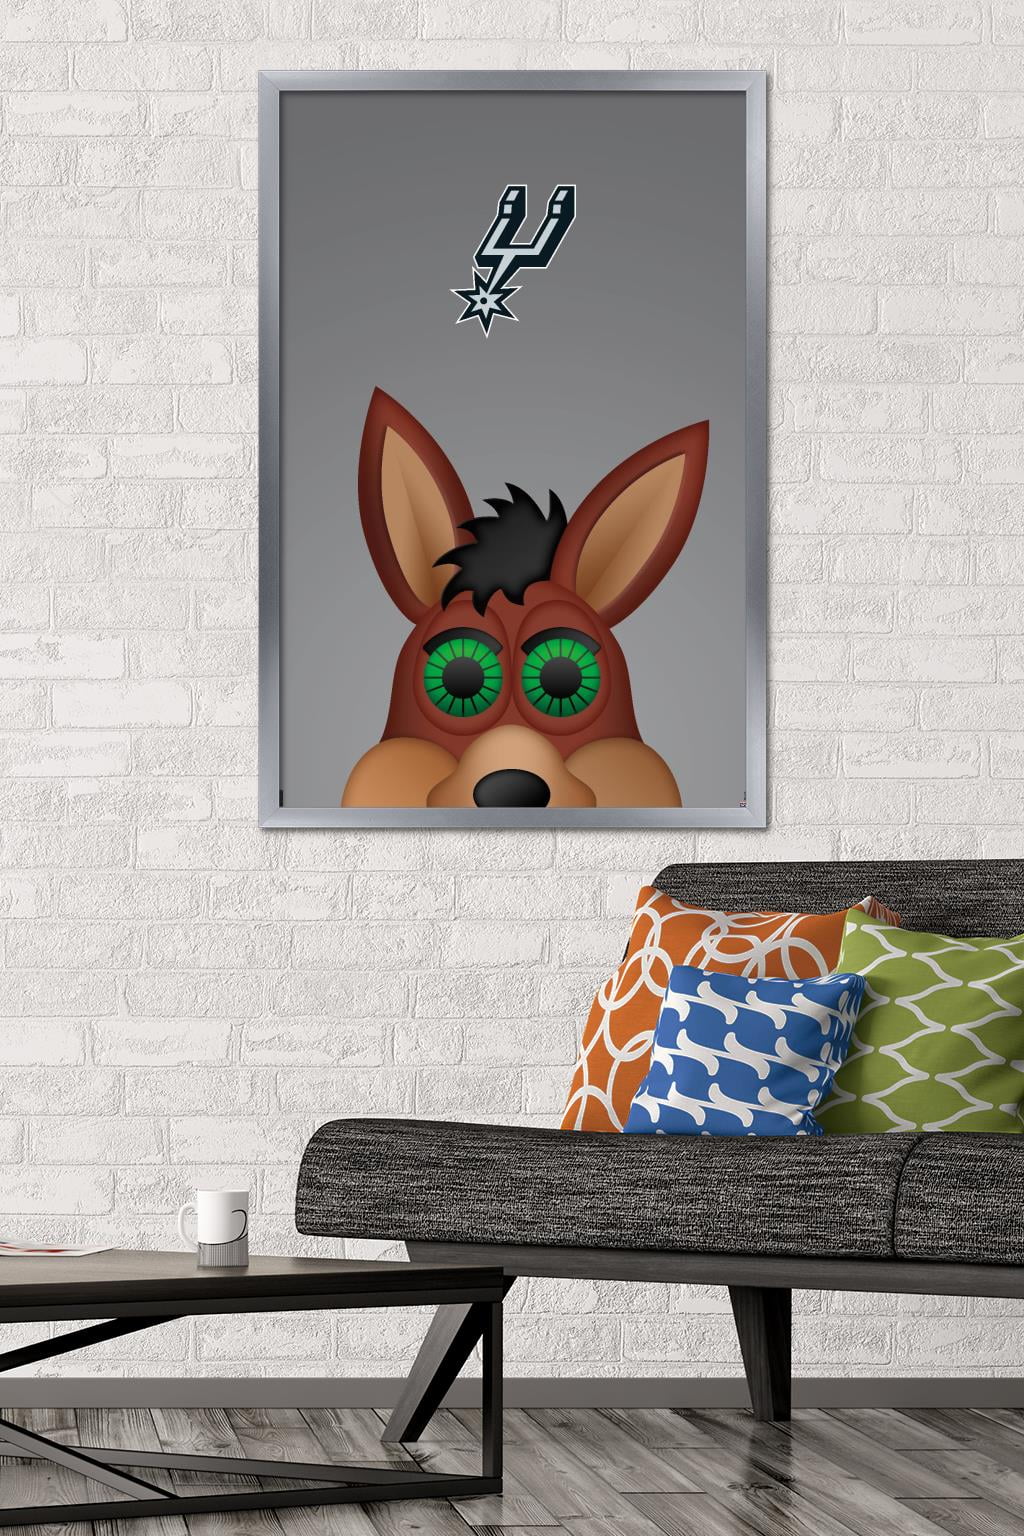 NBA San Antonio Spurs - S. Preston Mascot Coyote Wall Poster